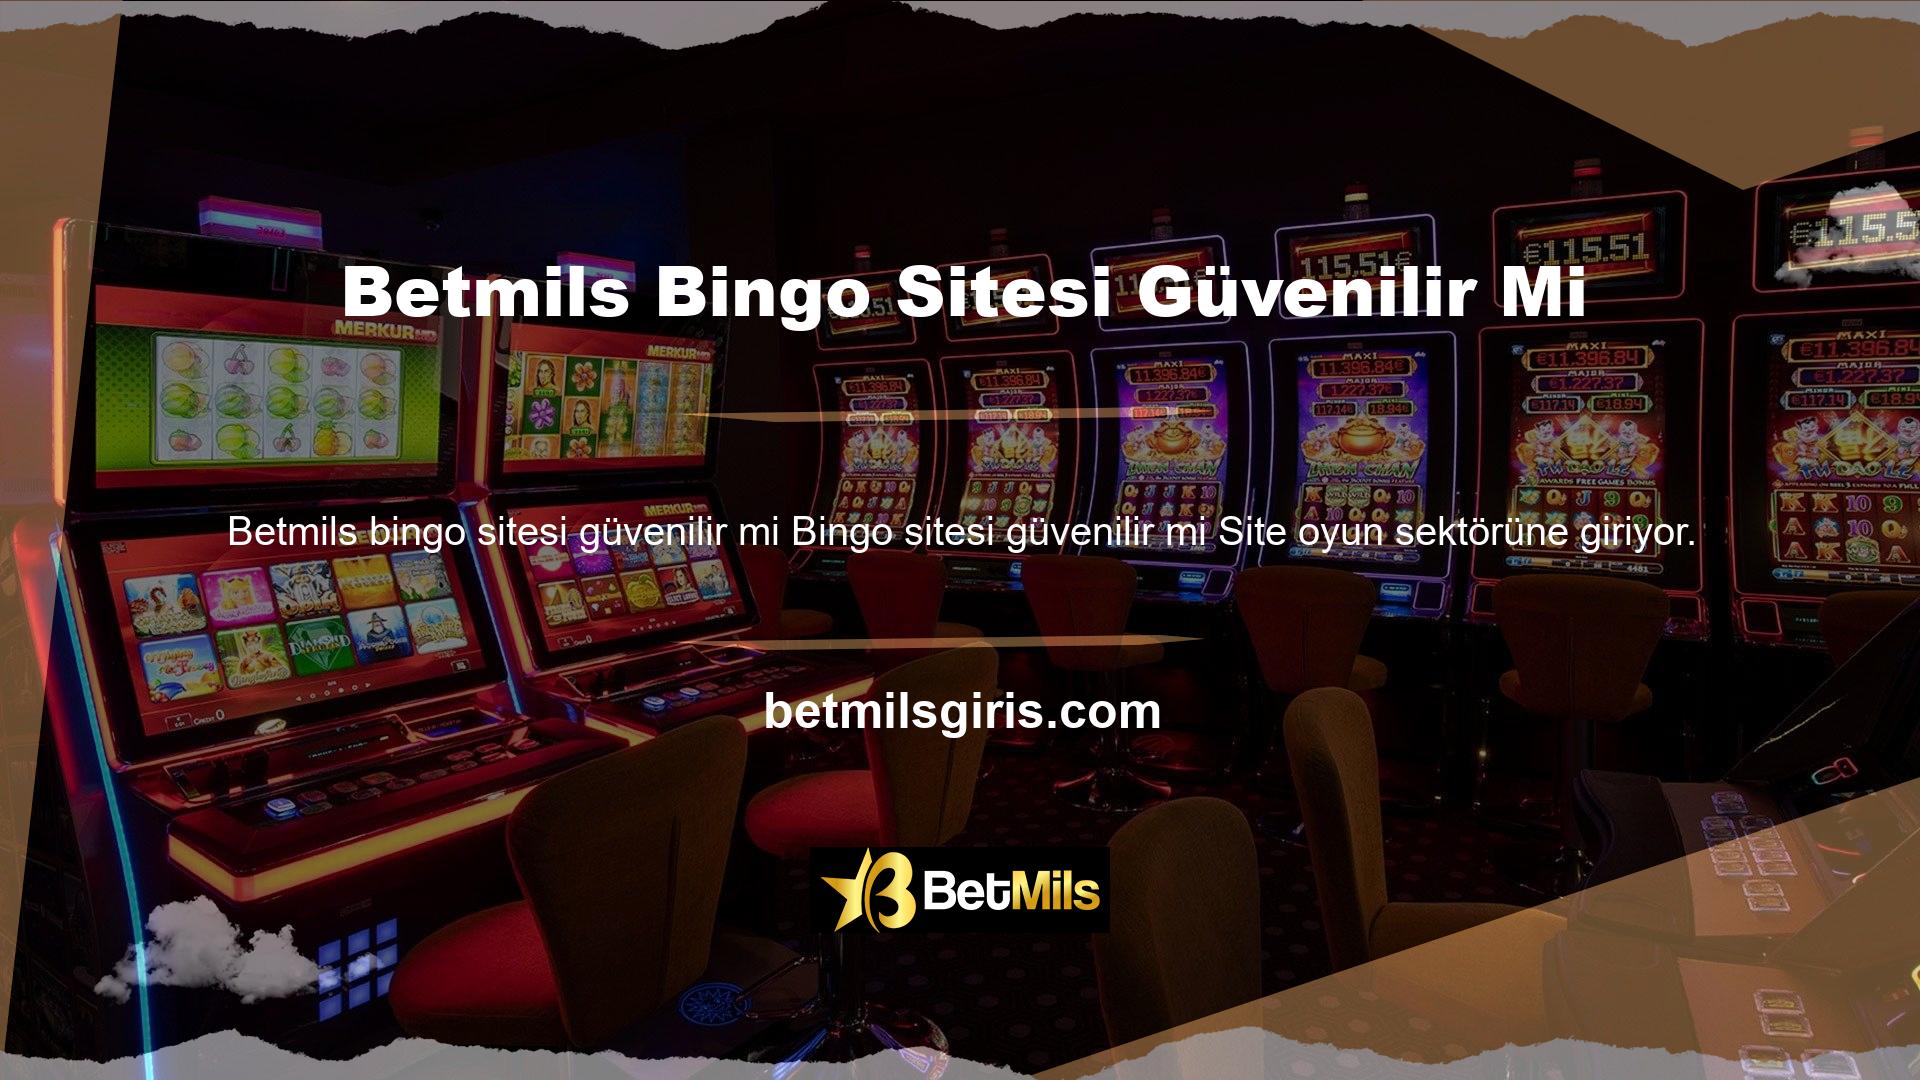 Bu siteler tüm casino oyunlarını içerebilir veya yalnızca bingo veya benzeri casino oyunlarına dayalı olabilir